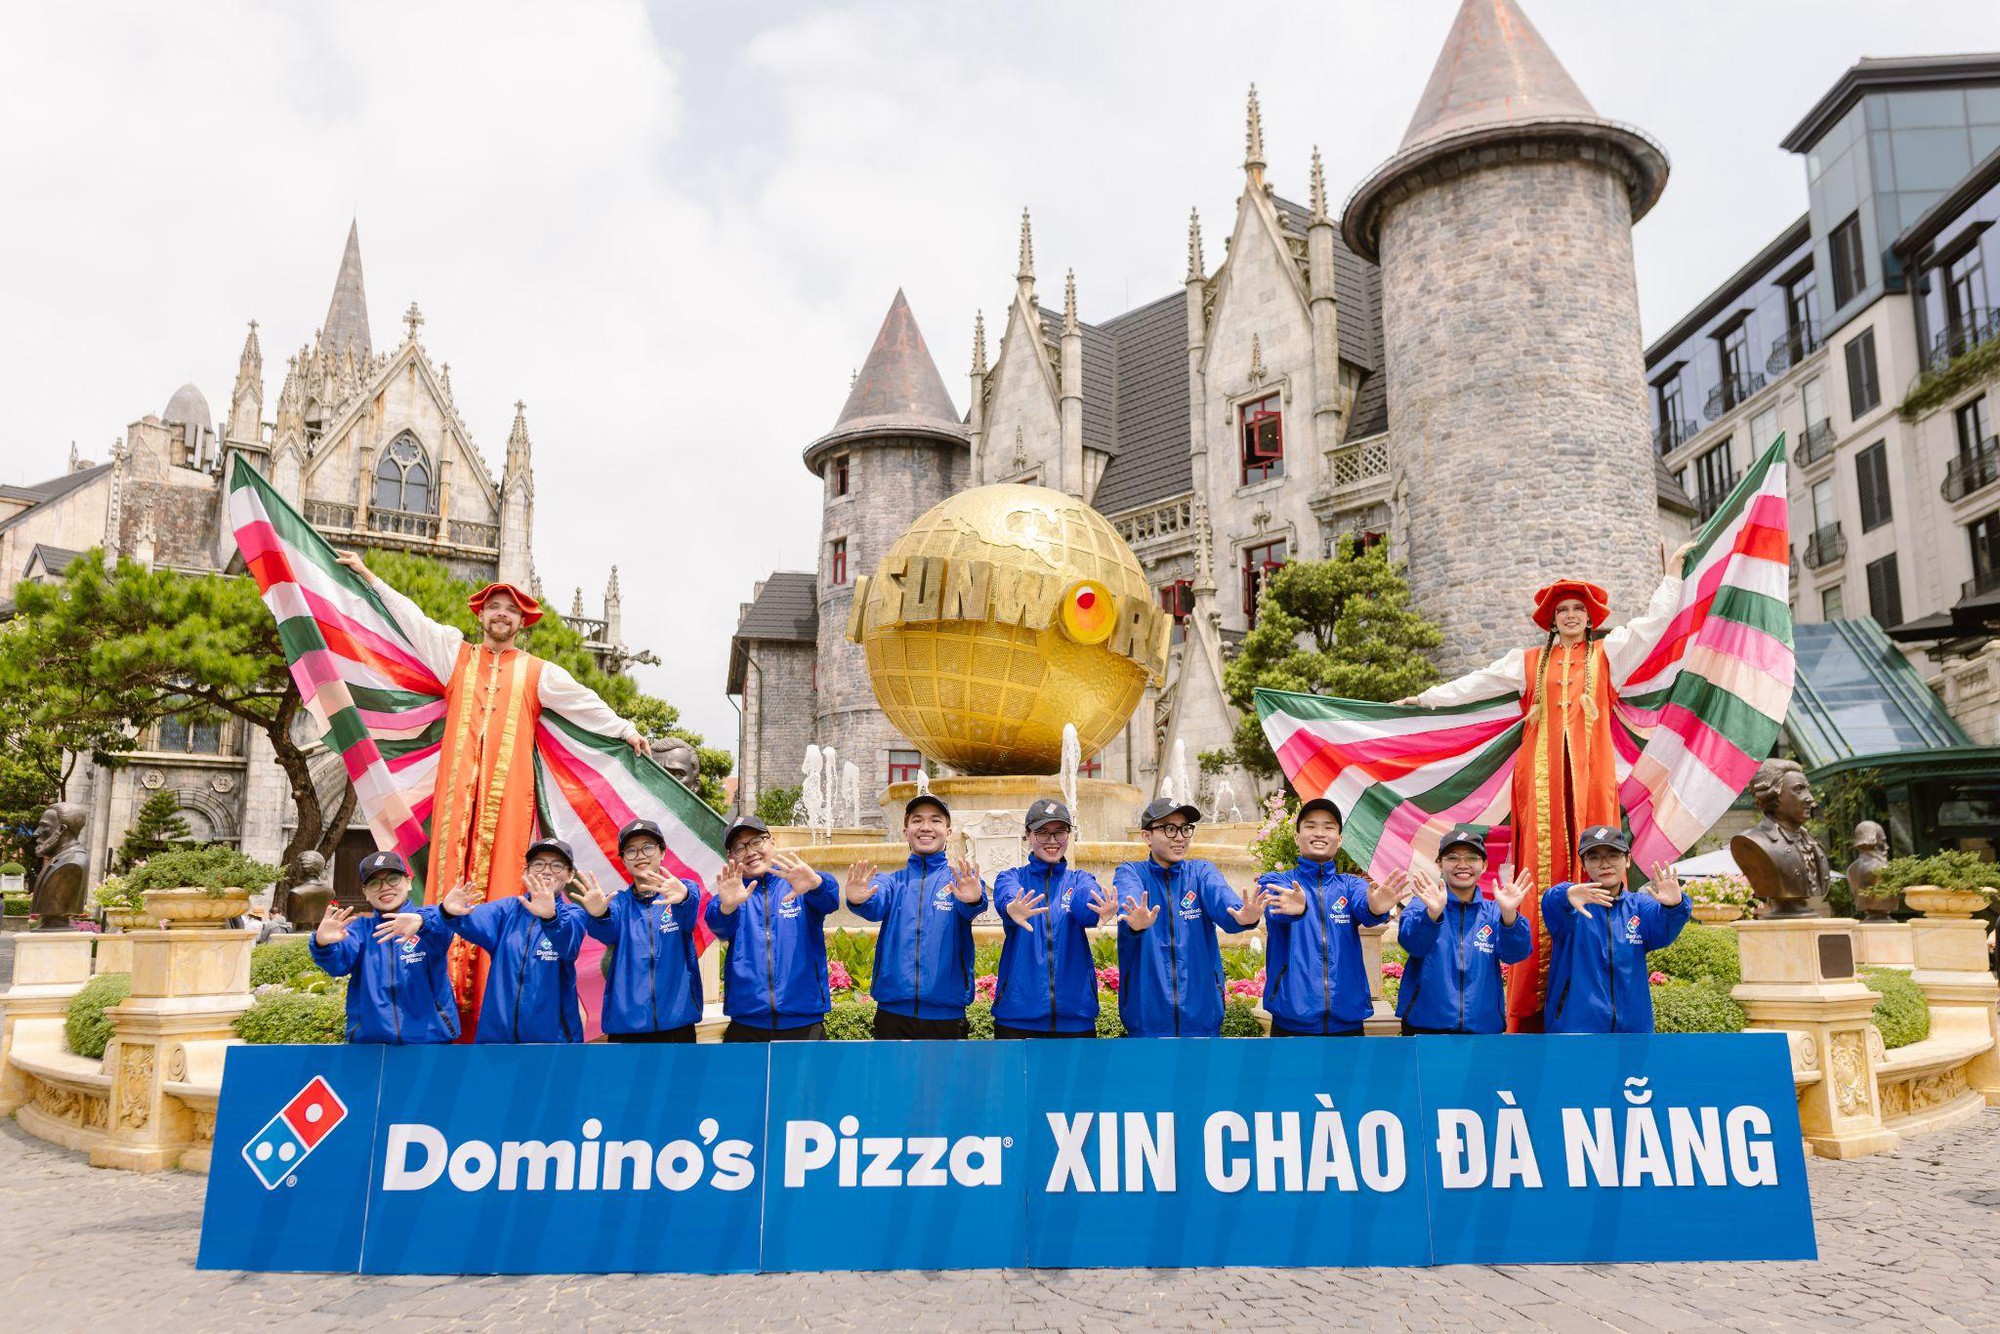 Giới trẻ Đà Nẵng bất ngờ với màn quảng bá thương hiệu bằng cáp treo độc, lạ của Domino’s Pizza - Ảnh 1.